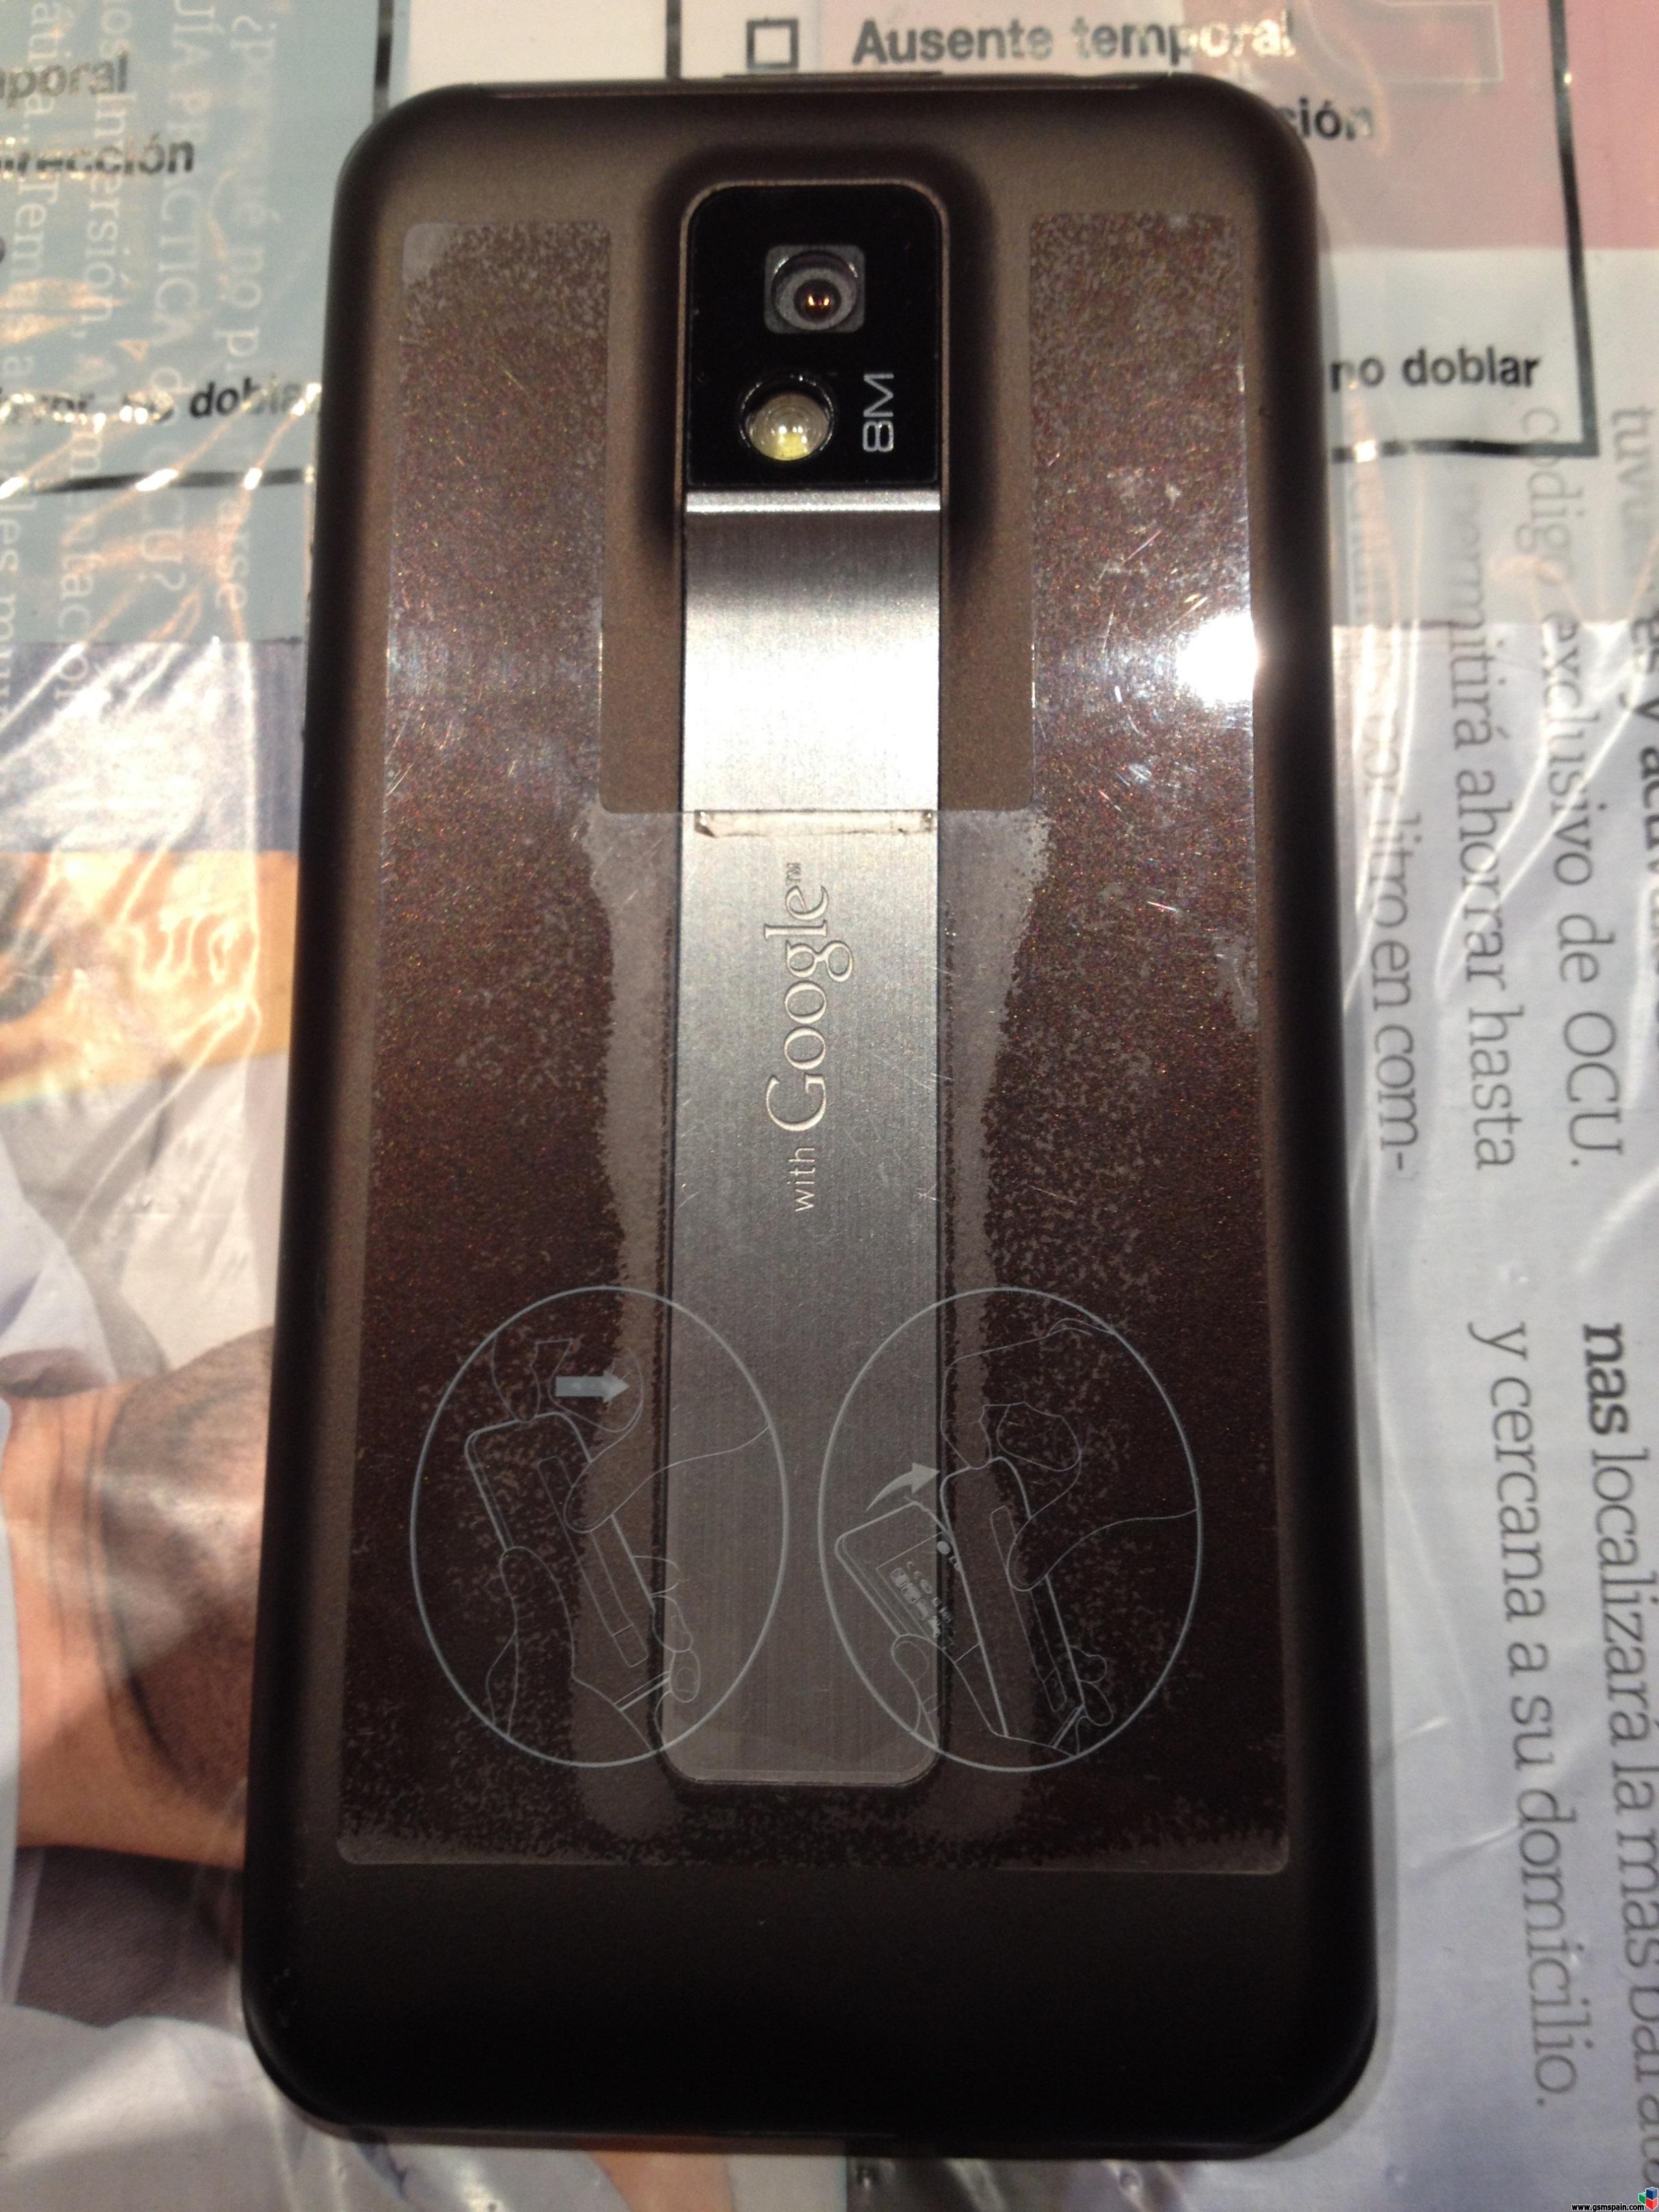 [VENDO] LG Optimus 2X P990 Libre, funciona perfecto, rooteado, con factura protector y funda